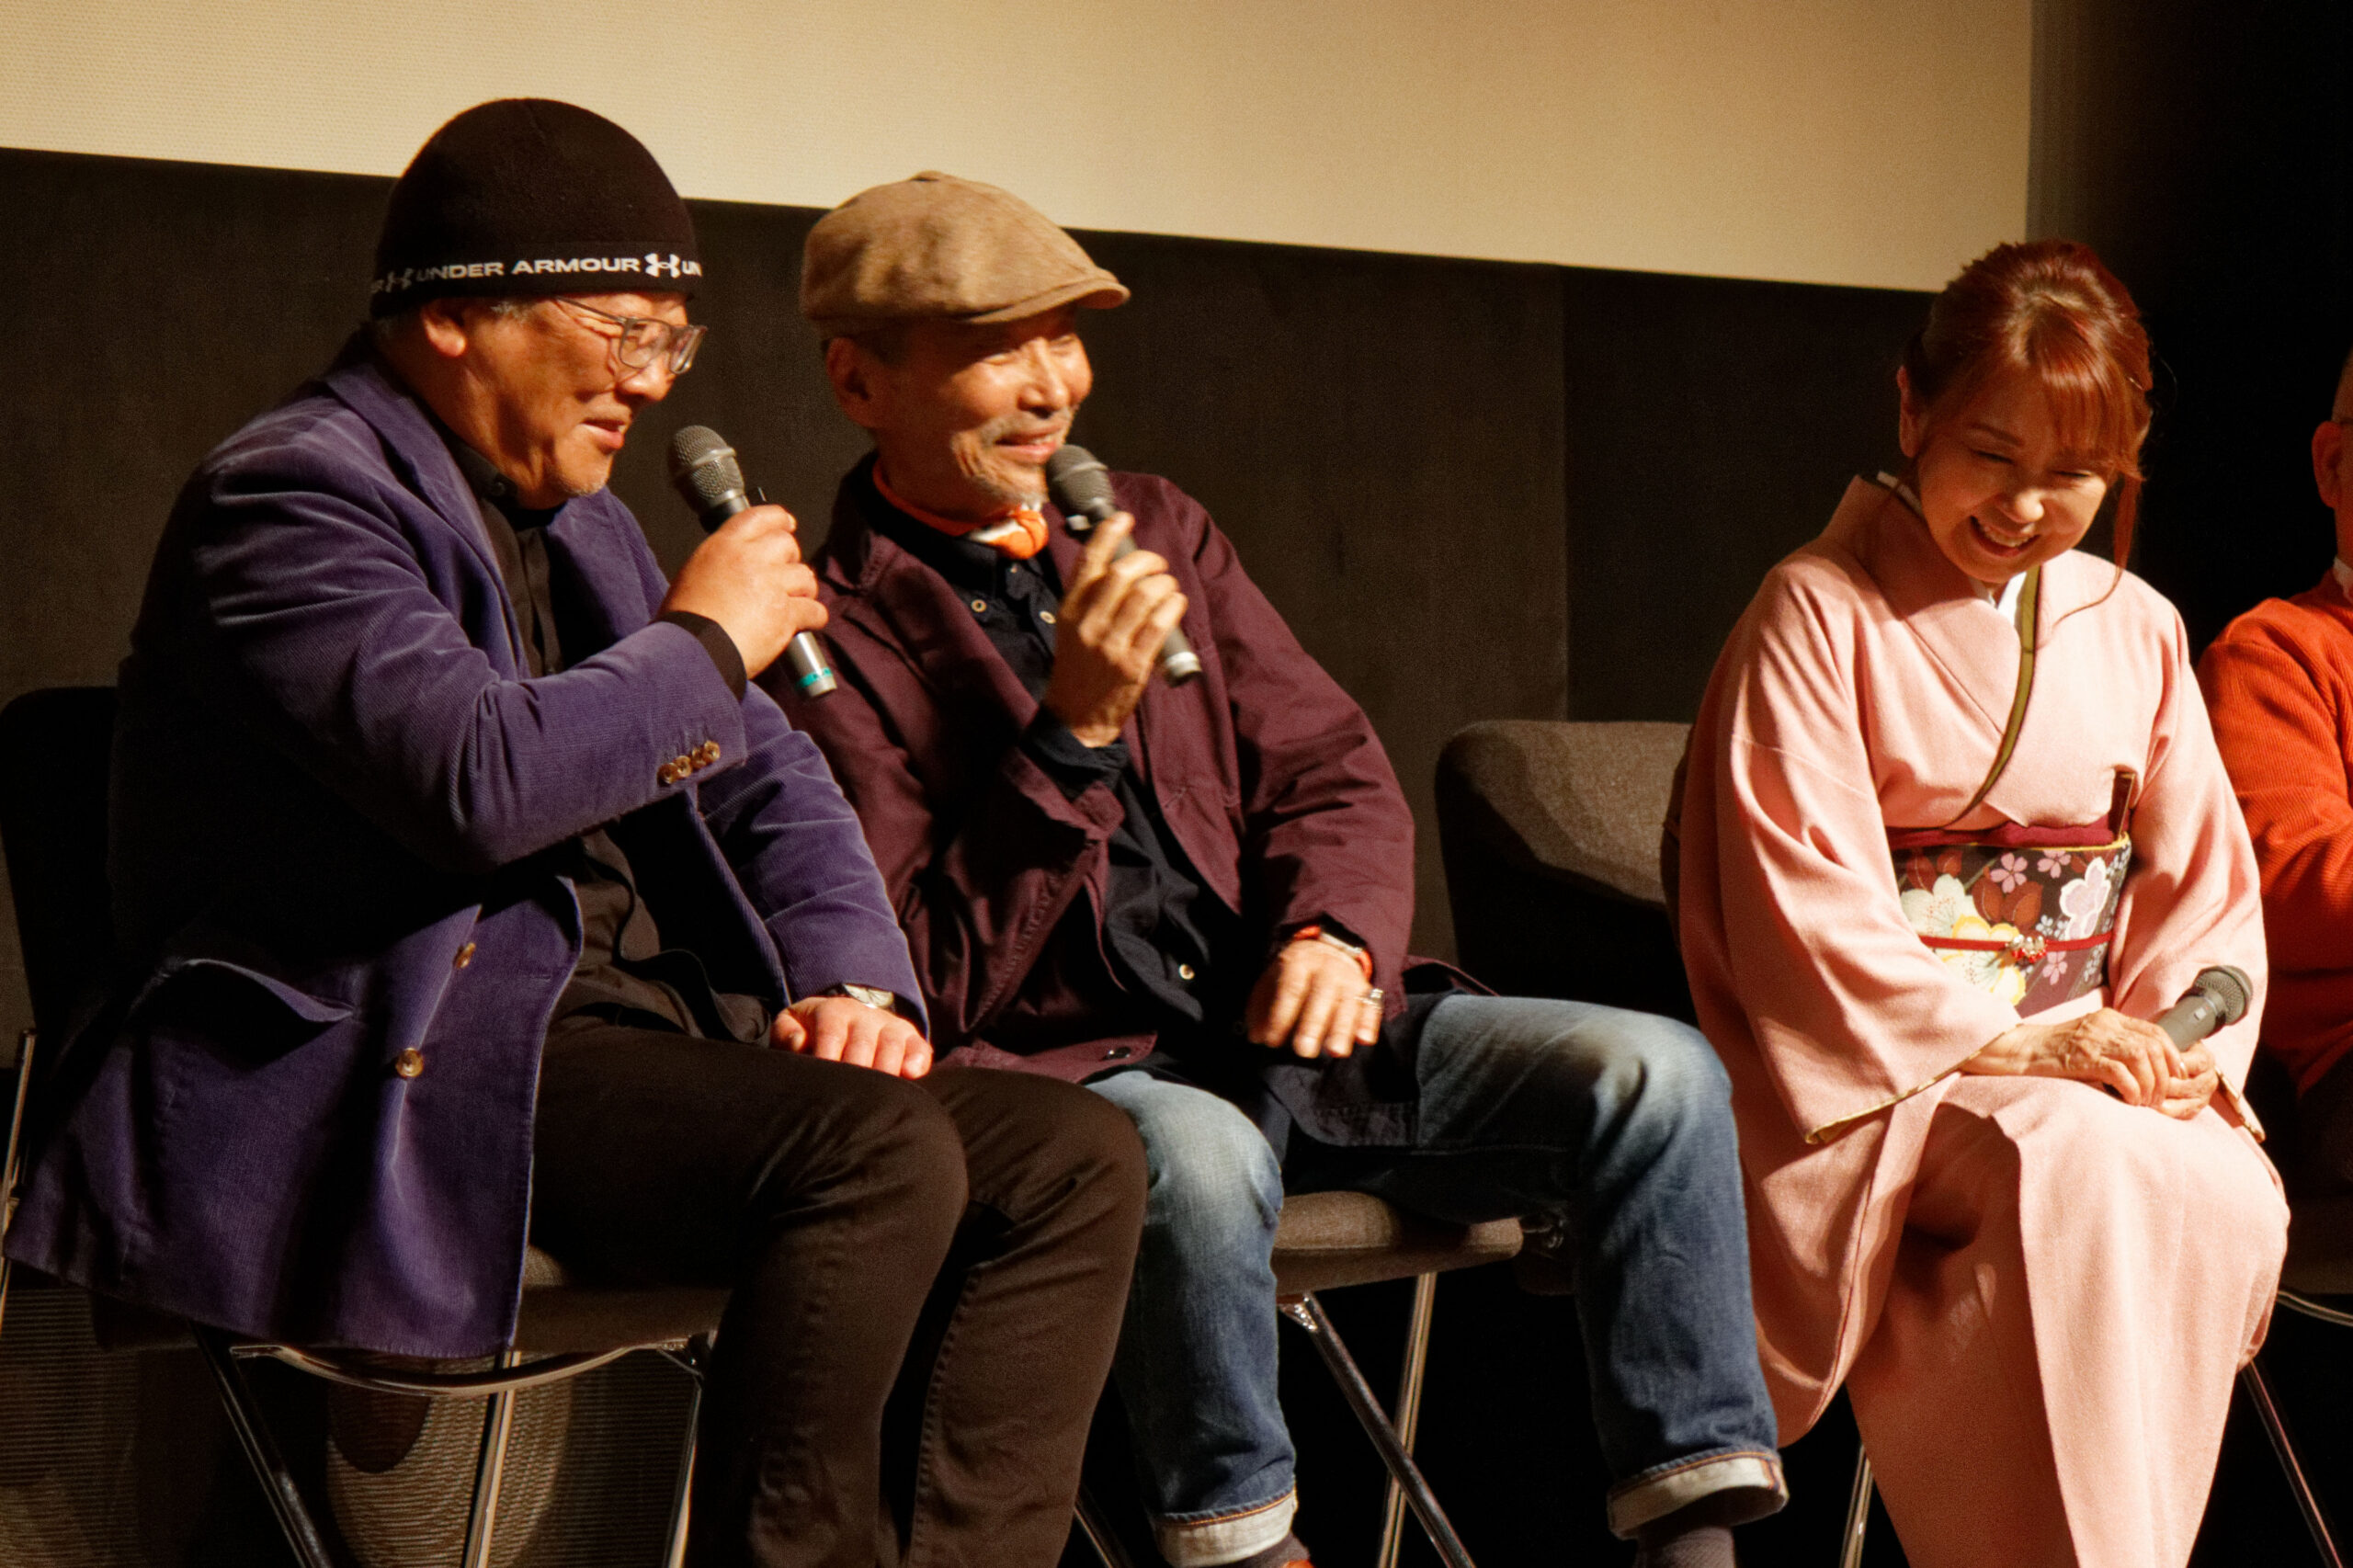 アカデミー賞授賞式直前イベントに品川ヒロシと森川智之が登壇「授賞式で話している人たちが別の映画で共演するかも、と考えるのも楽しい」